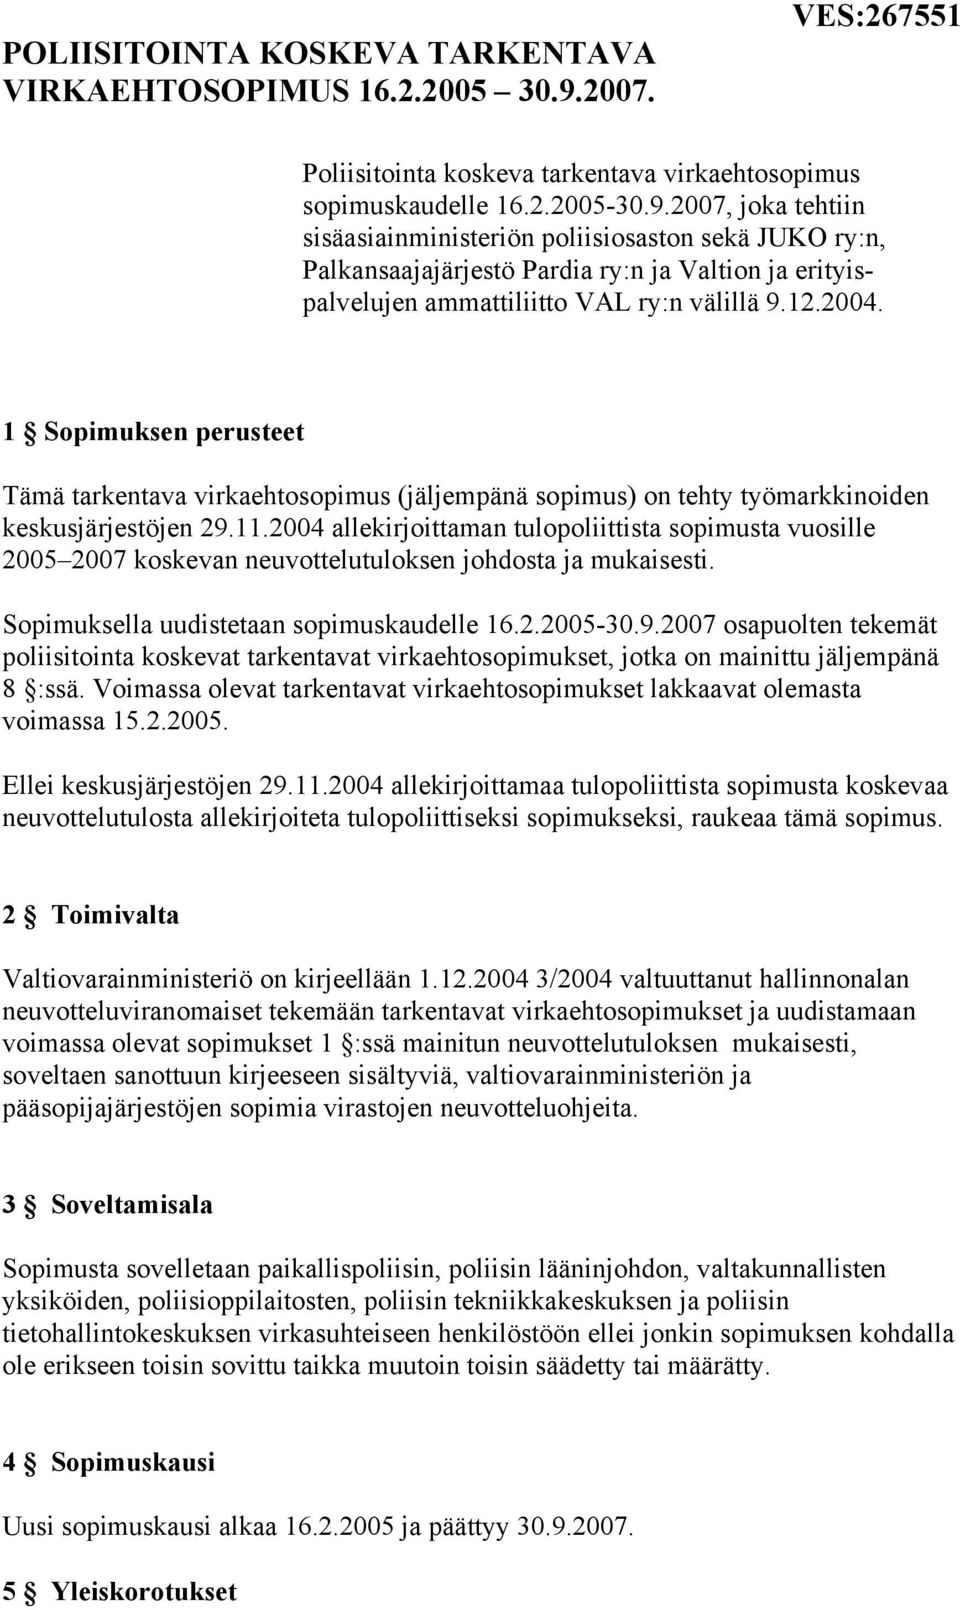 2007, joka tehtiin sisäasiainministeriön poliisiosaston sekä JUKO ry:n, Palkansaajajärjestö Pardia ry:n ja Valtion ja erityispalvelujen ammattiliitto VAL ry:n välillä 9.12.2004.